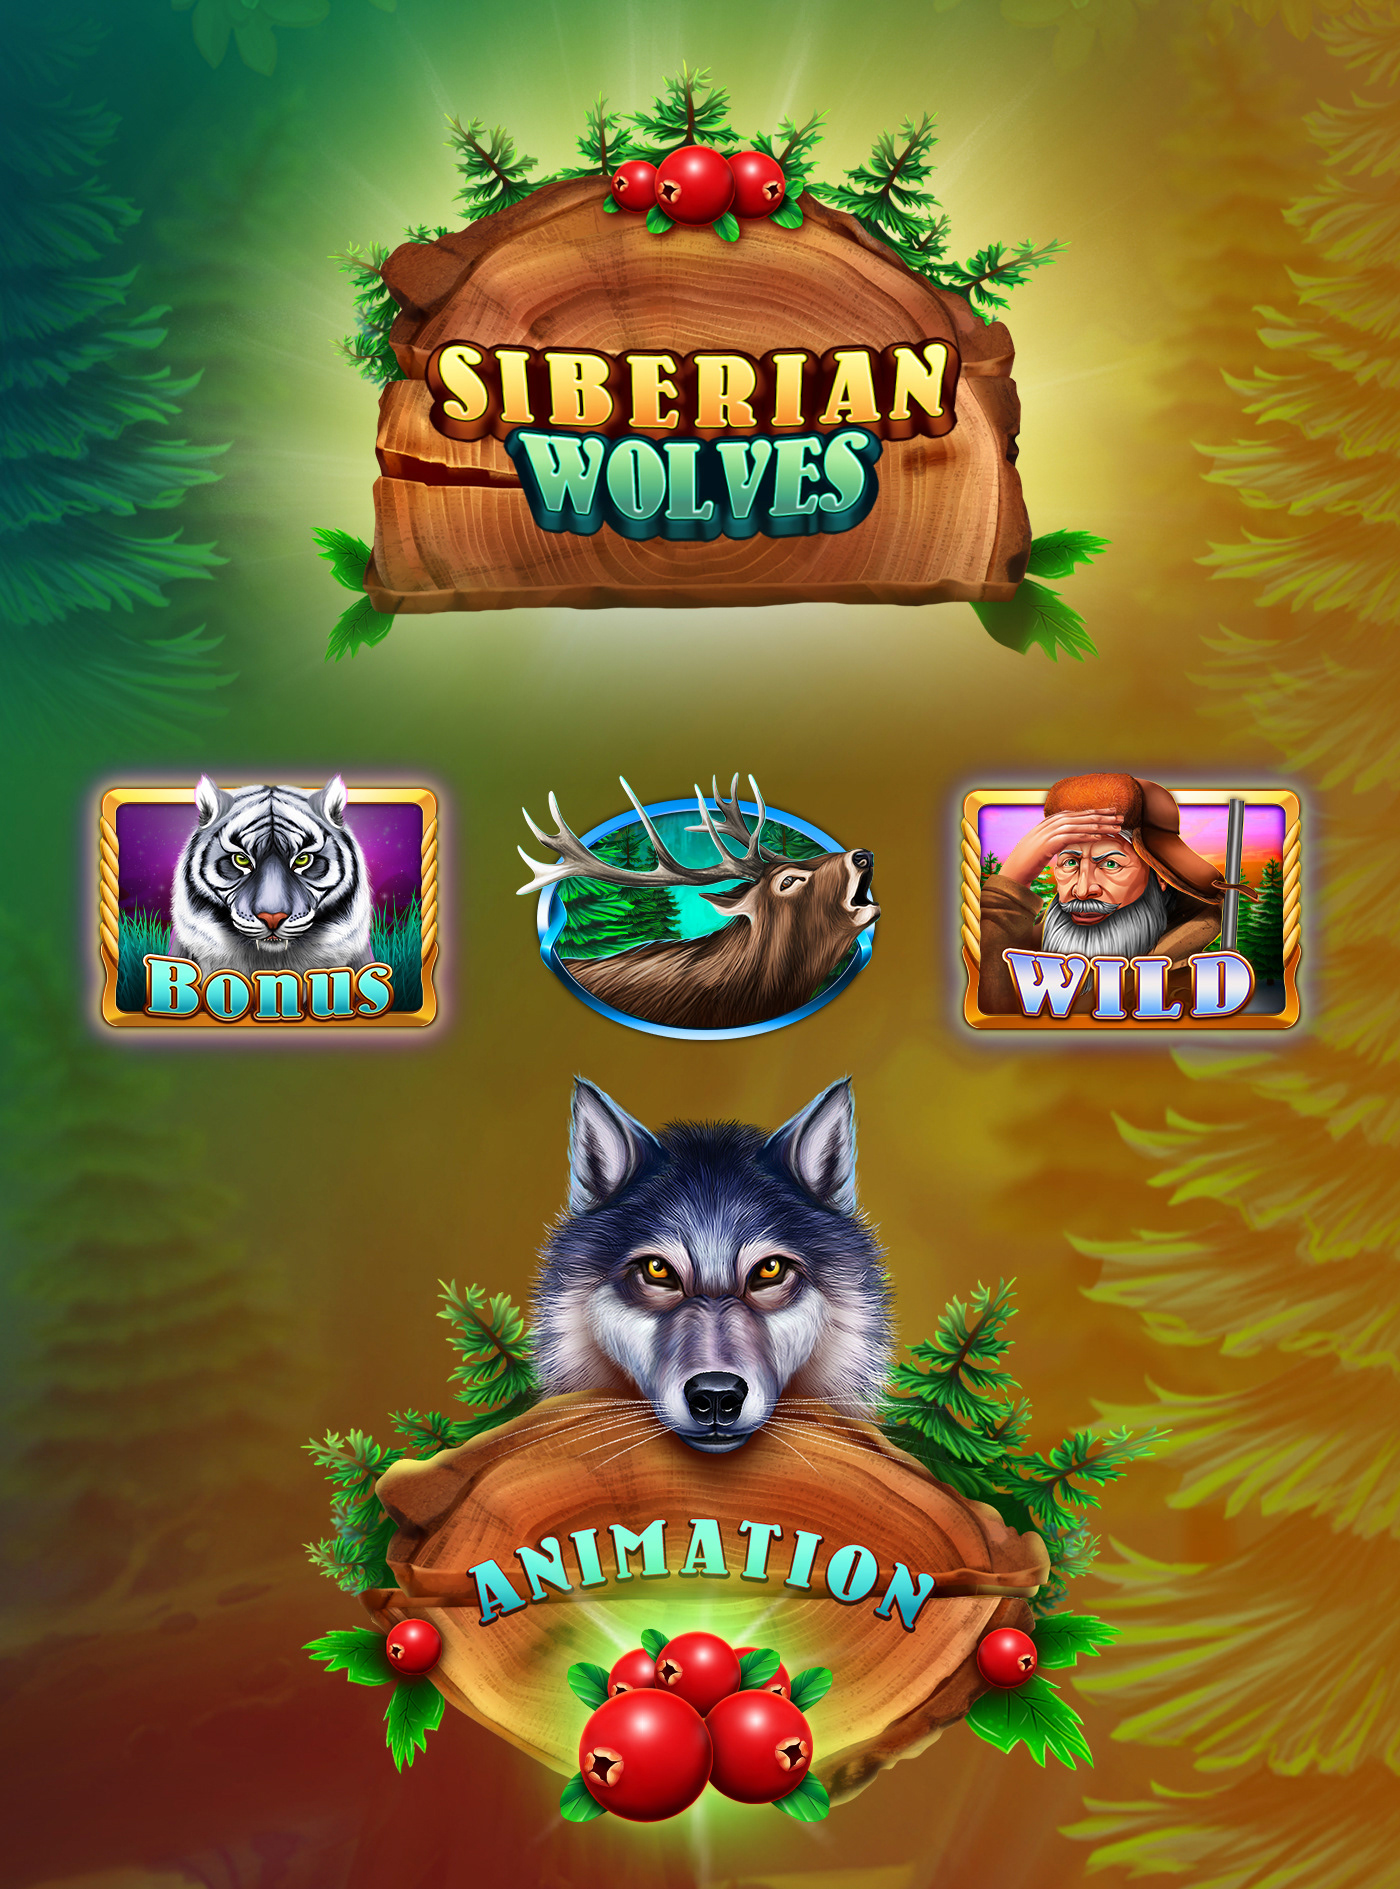 Big Win in Siberian Wolf!